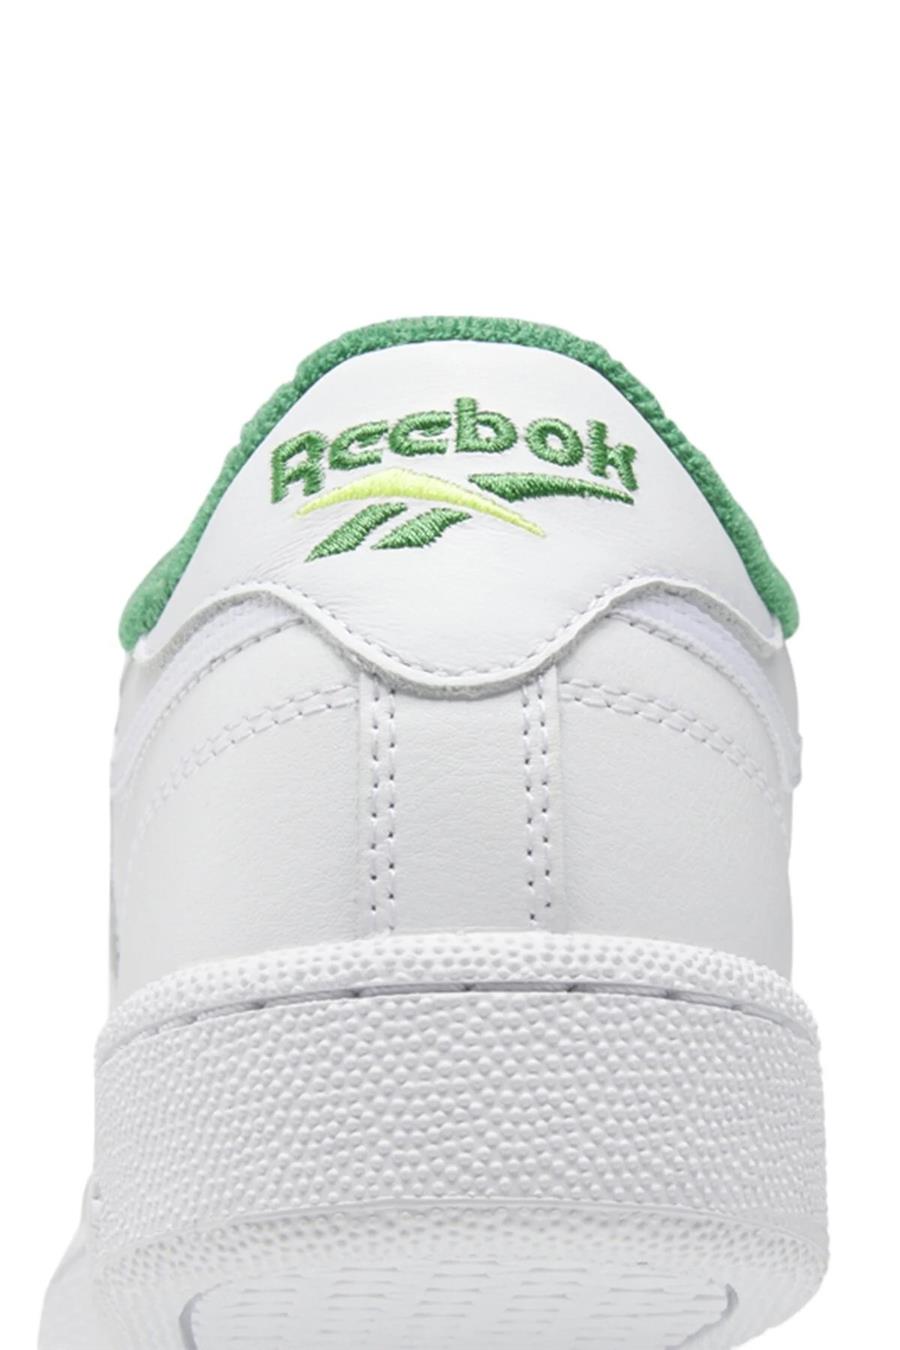 Reebok Club C 85 Beyaz Kadın Sneaker Ayakkabı